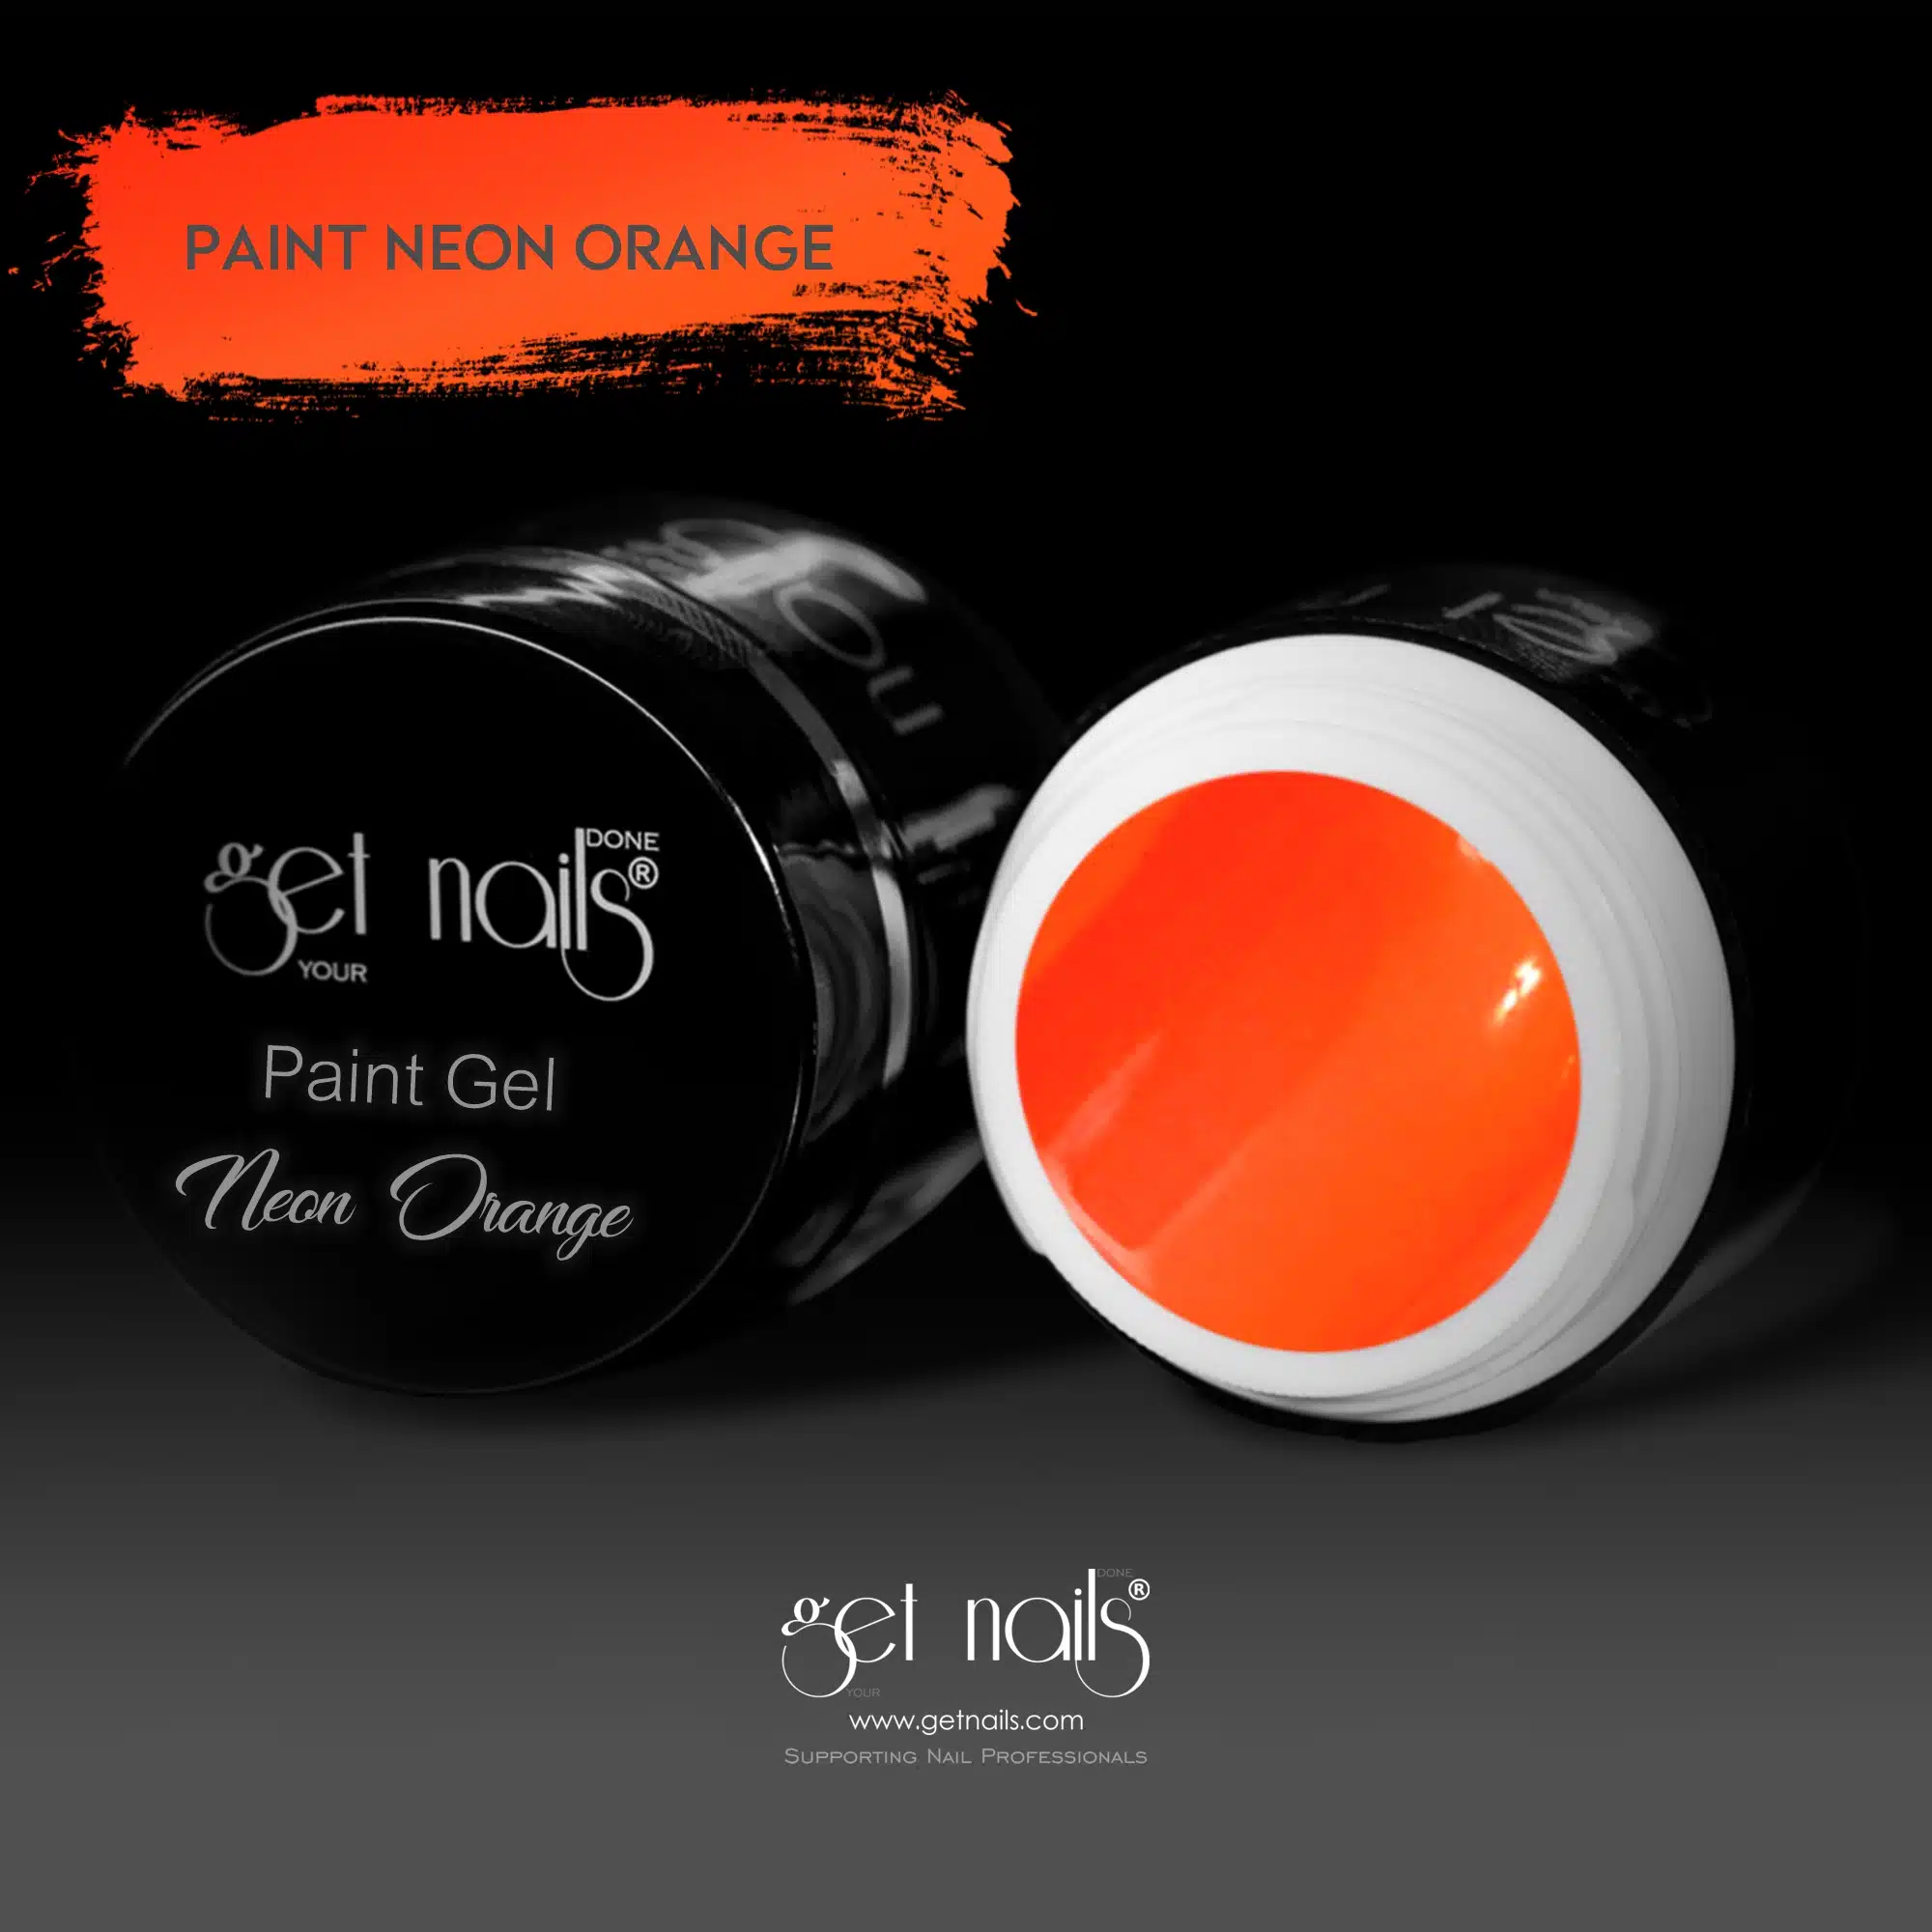 Nabavite Nails Austria - Paint Gel Neon Orange 5g